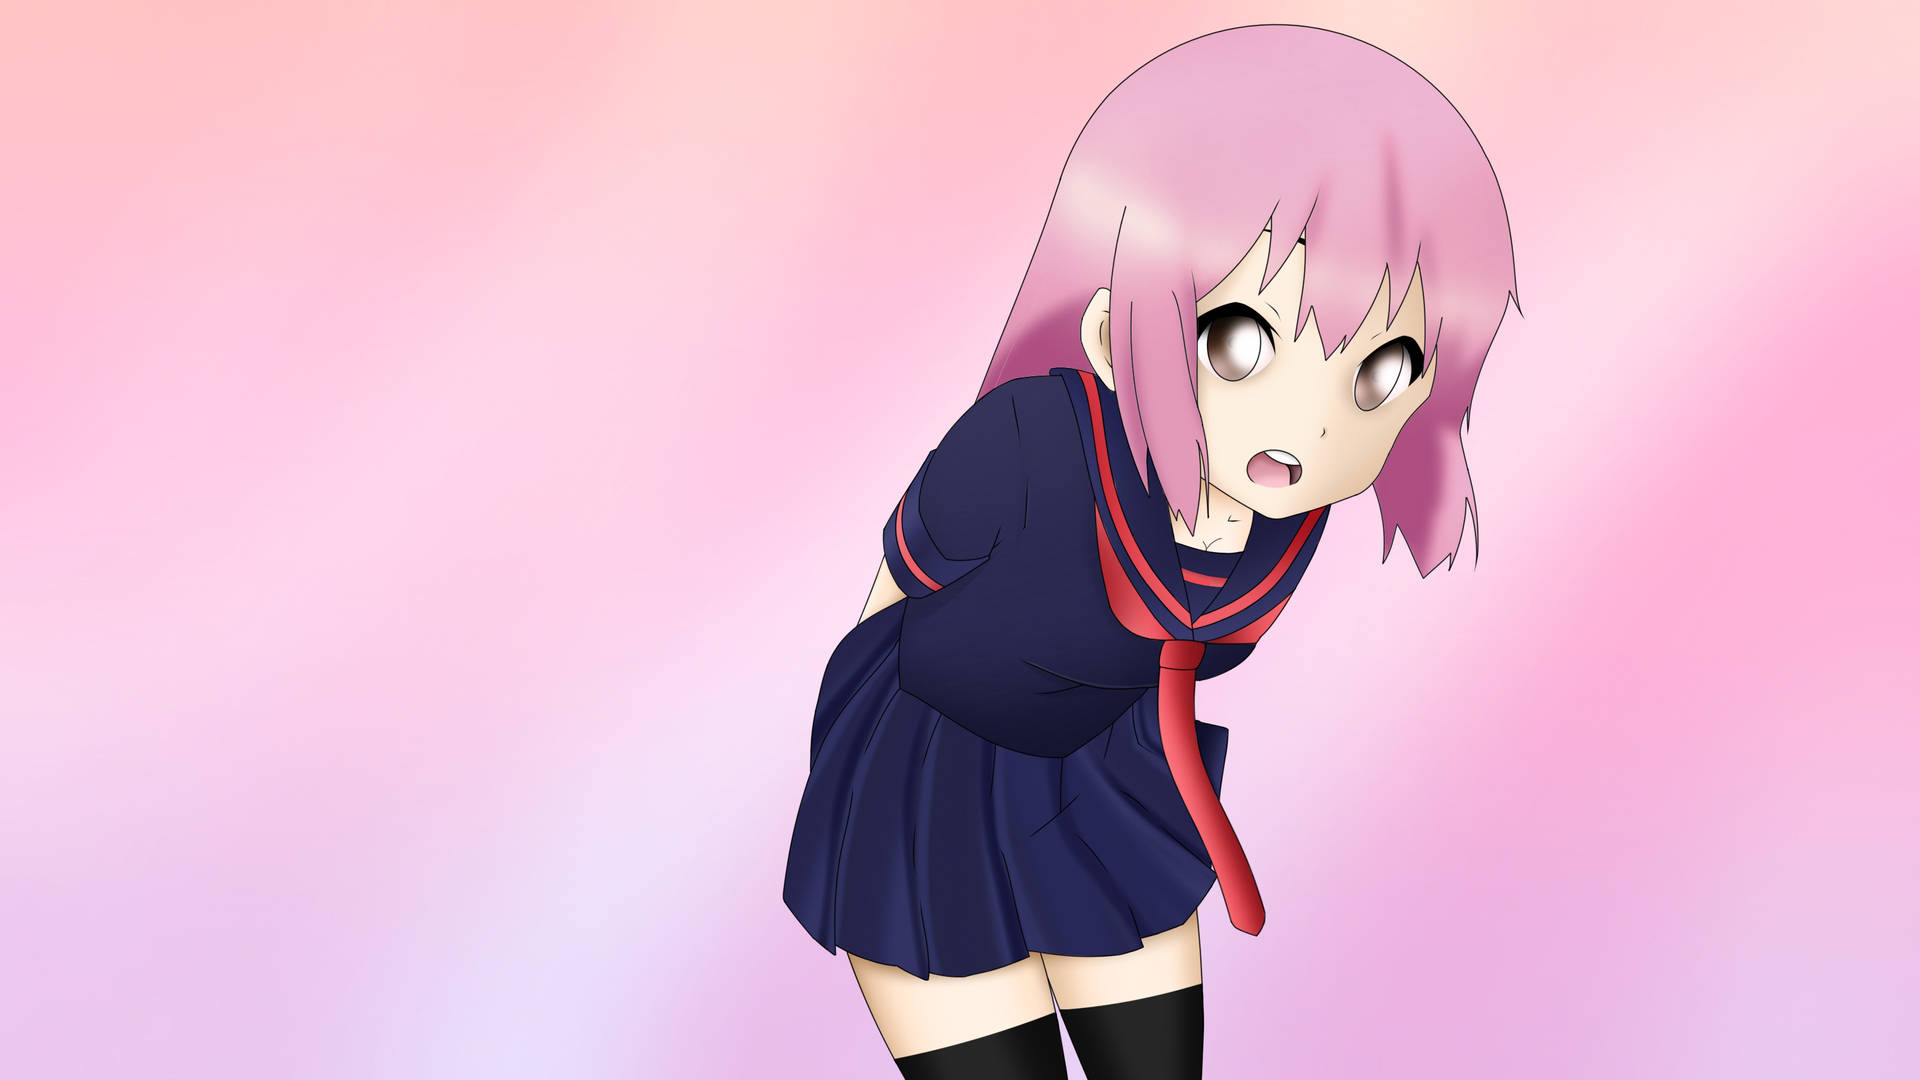 Pink Anime Aesthetic Schoolgirl Background